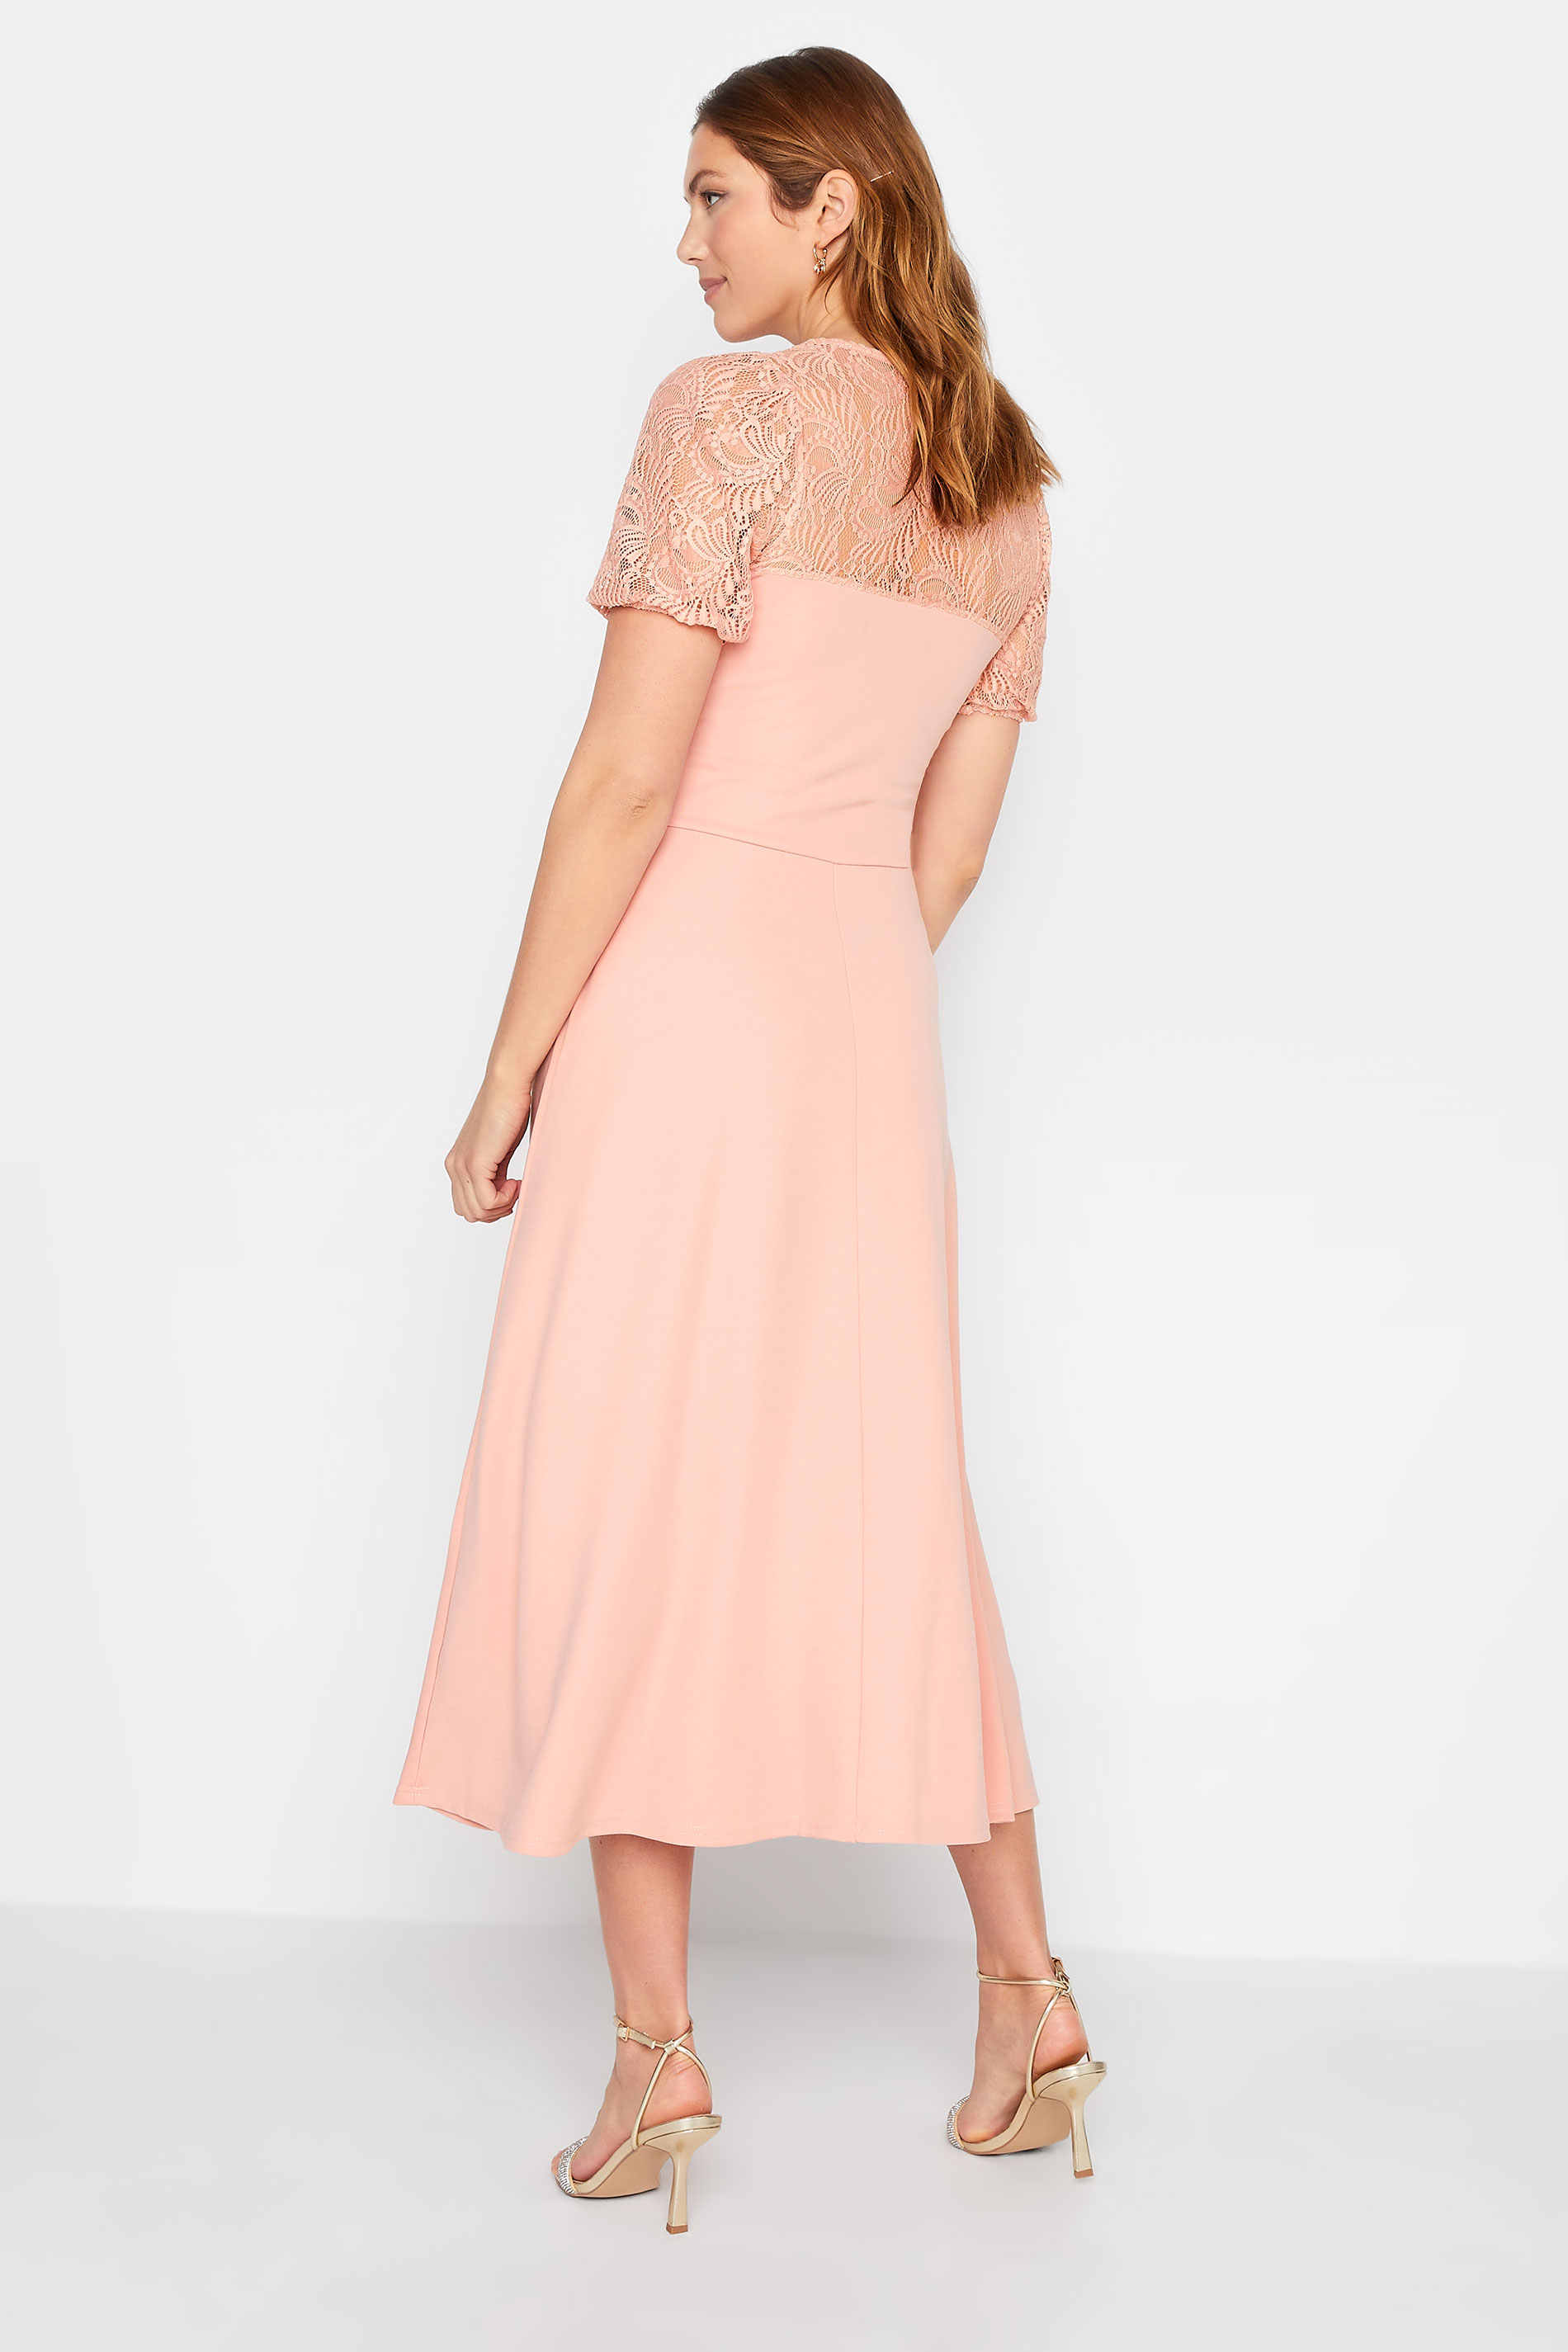 LTS Tall Women's Pink Lace Midi Dress | Long Tall Sally  3